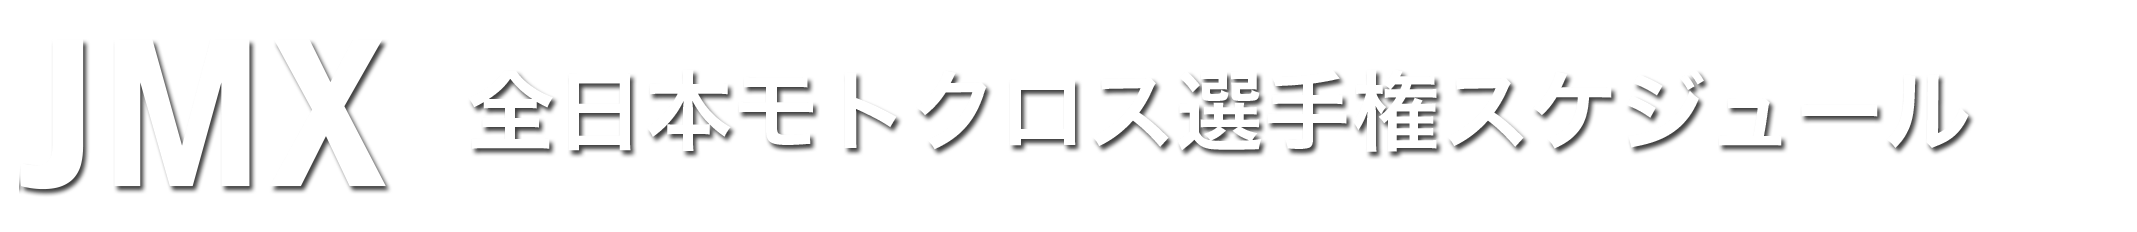 全日本モトクロス選手権スケジュール